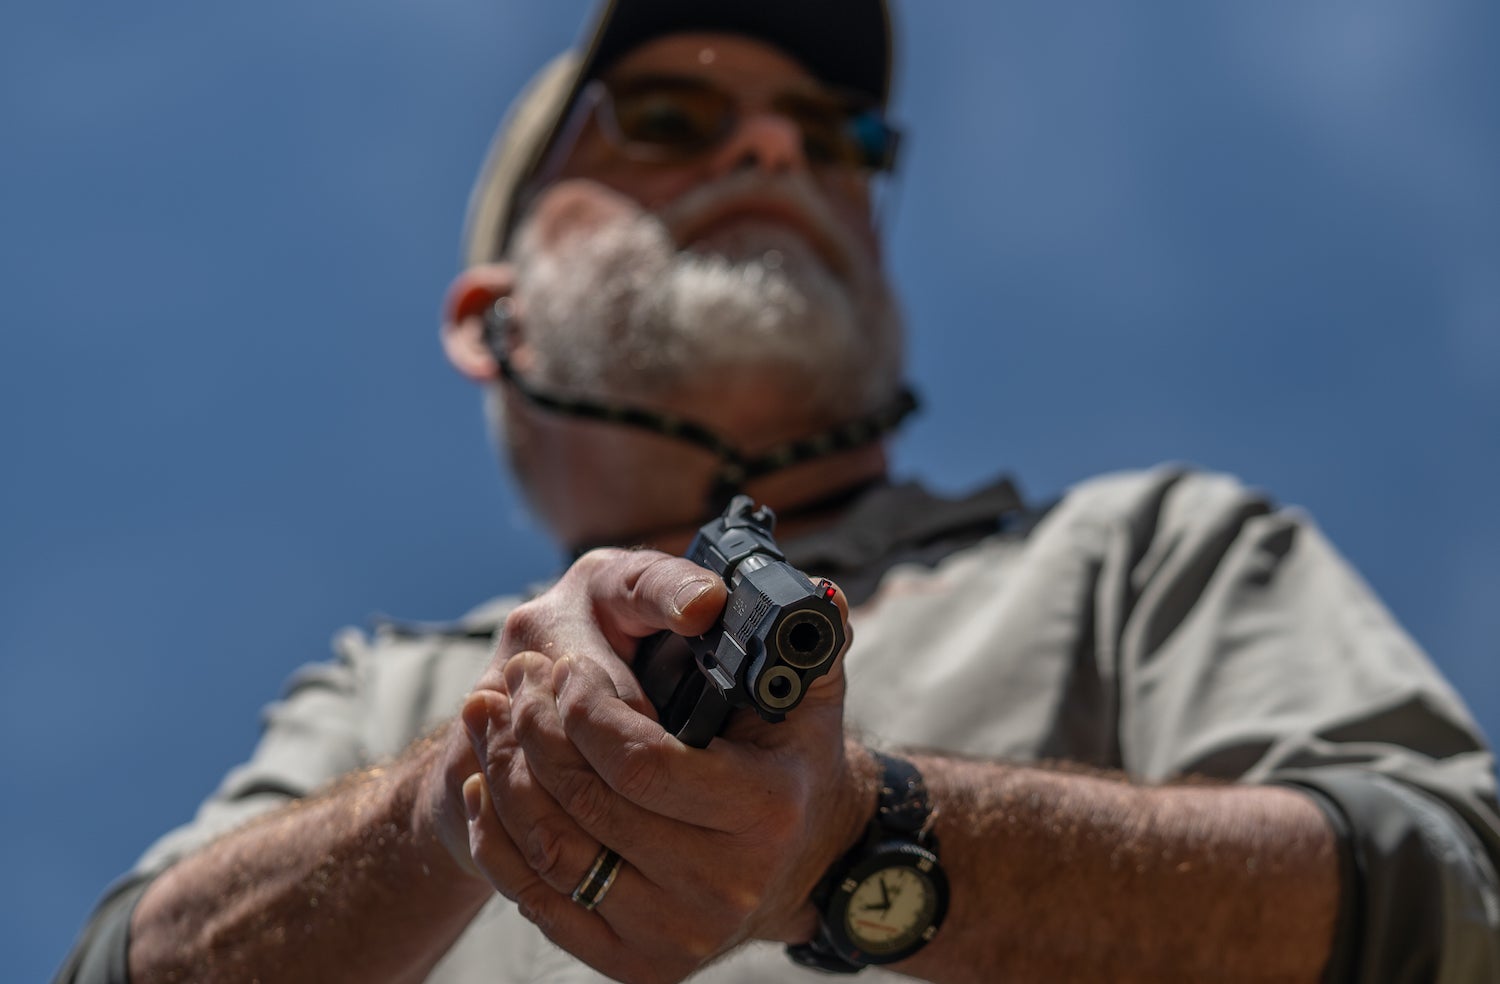 Shooter holding a handgun.